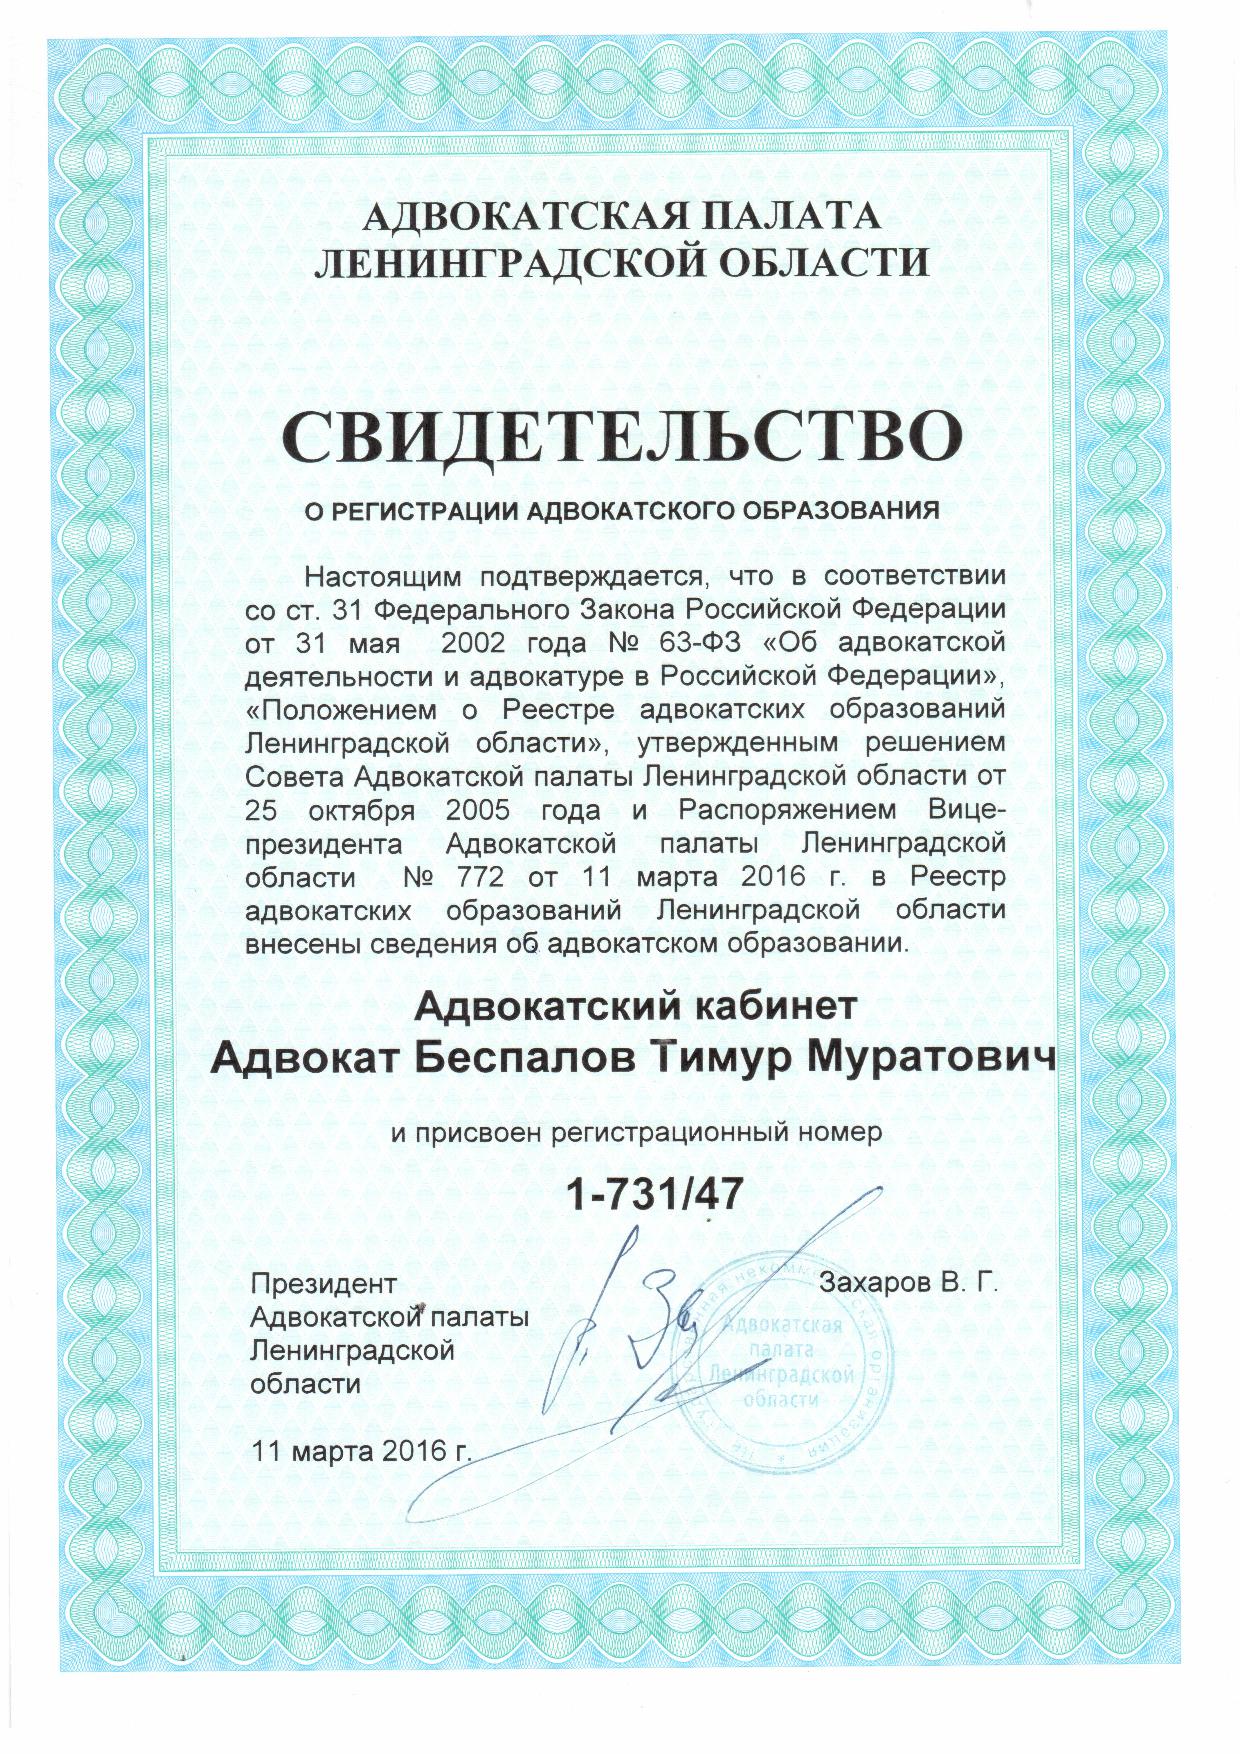 Свидетельство о регистрации адвокатского образования - Беспалов Тимур Муратович